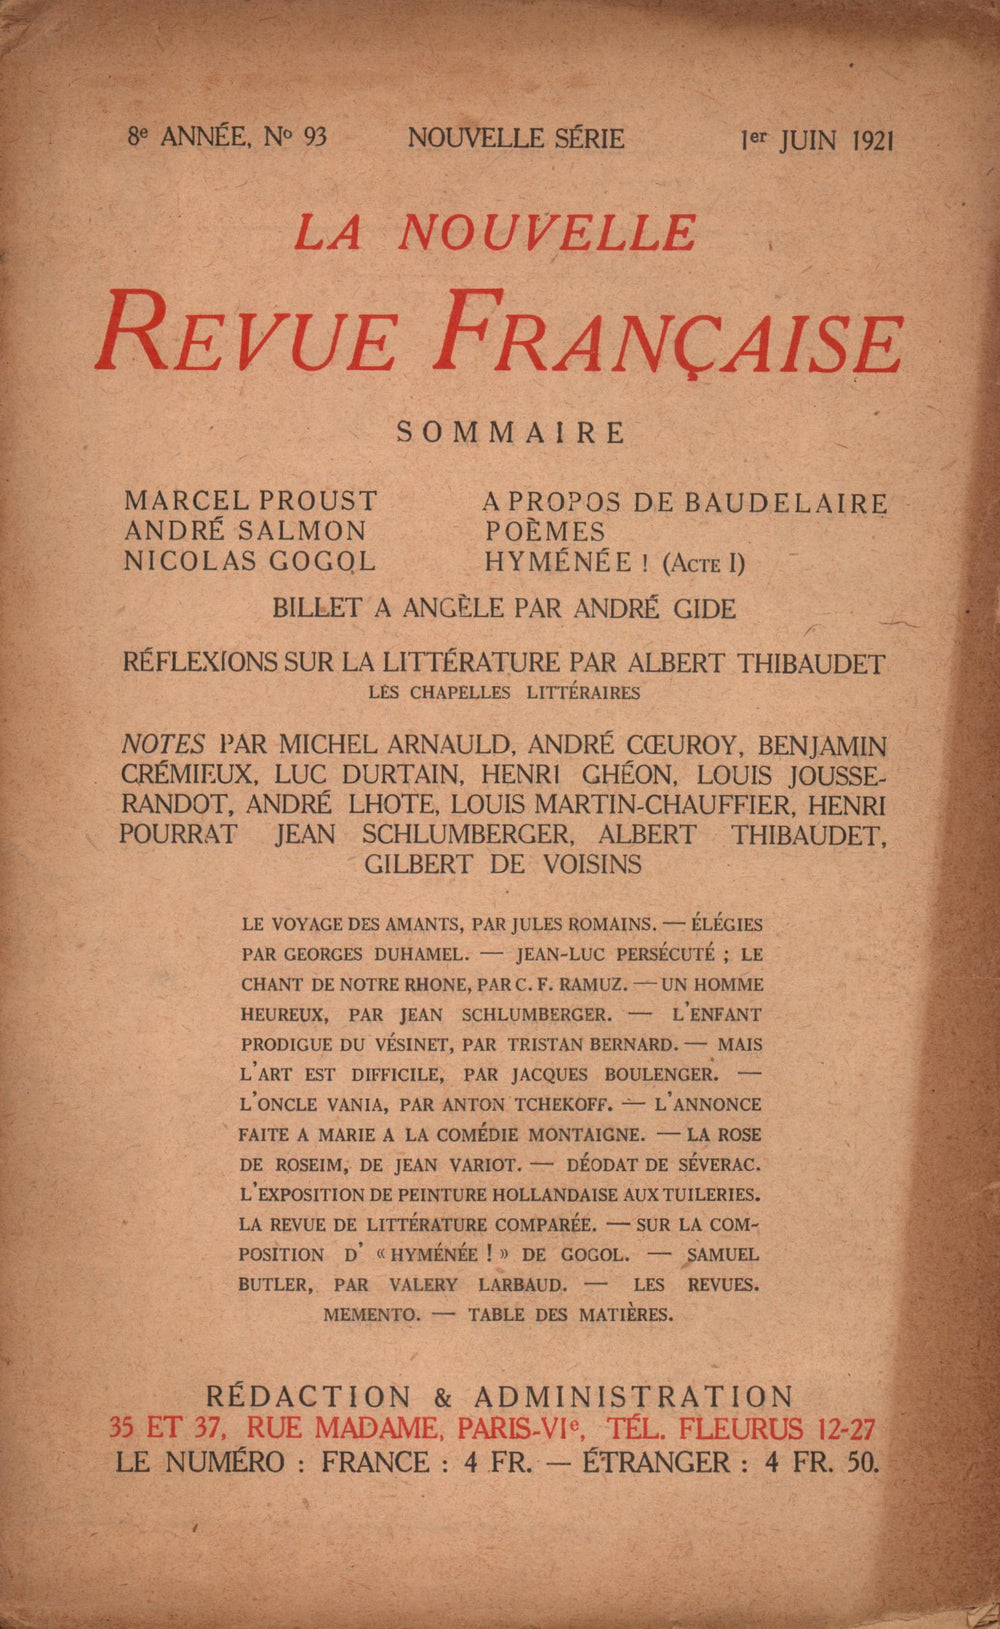 La Nouvelle Revue Française N' 93 (Juin 1921)